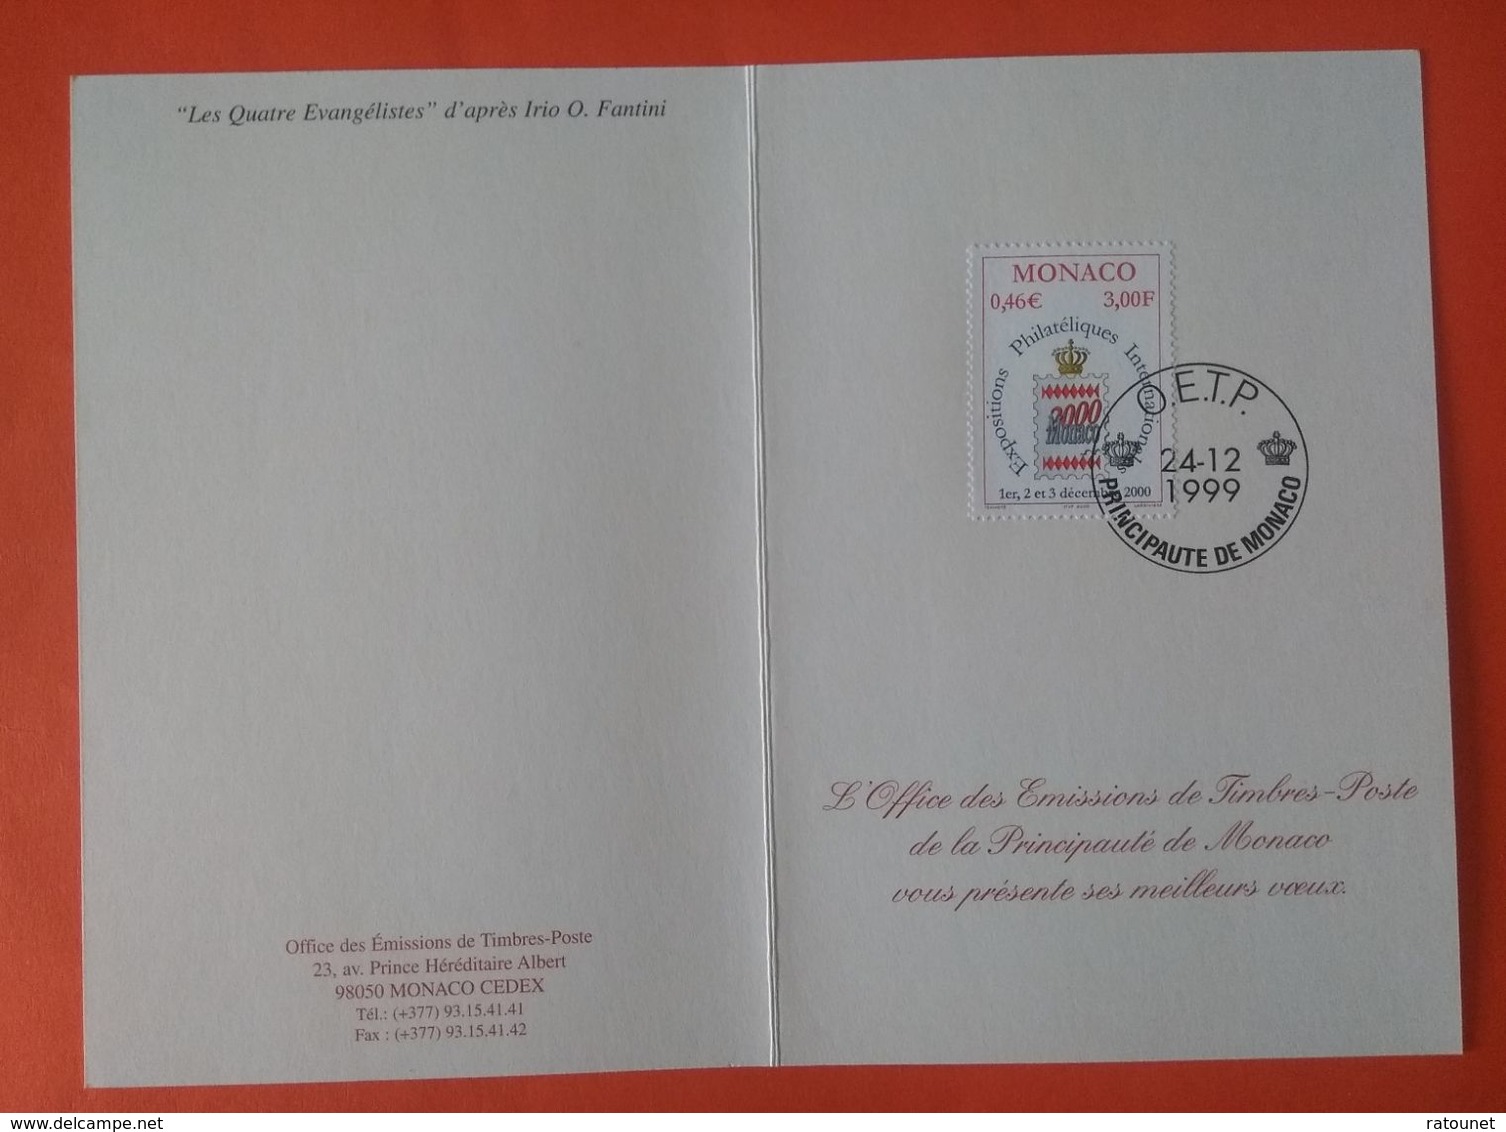 MONACO 1999 -   YT 2229 - Monaco 2000 - Expositions Philatéliques Internationales + Les Quatres Evangélistes (Fantini) - Covers & Documents